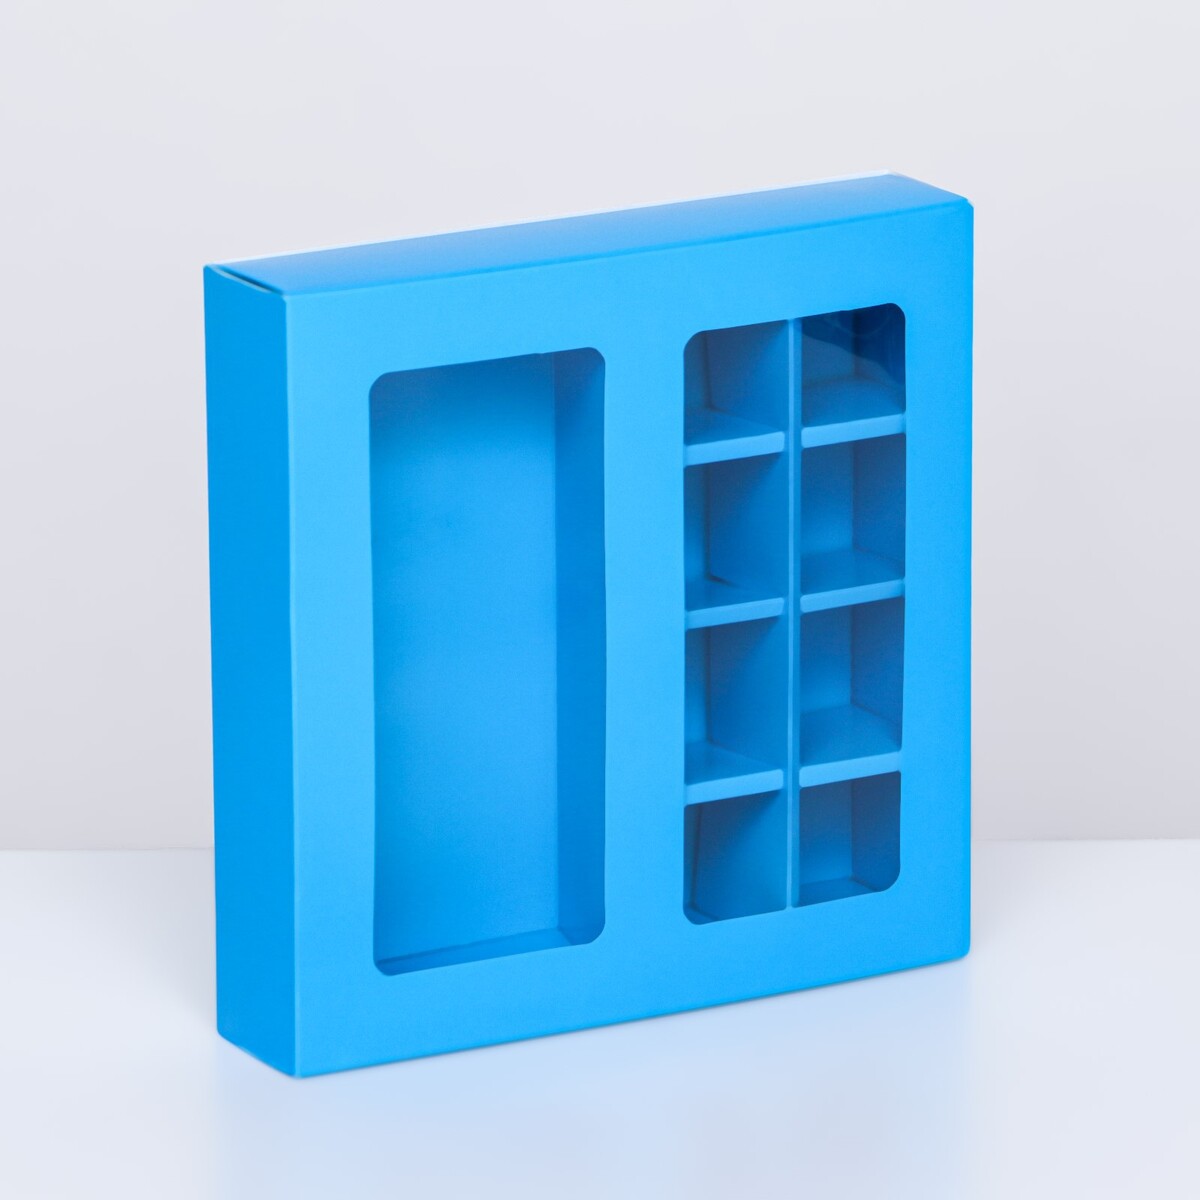 Коробка под 8 конфет + шоколад, с окном, голубая, 17,7 х 17,7 х 3,8 см коробка для конфет 4 шт голубой 12 5х 12 5 х 3 5 см